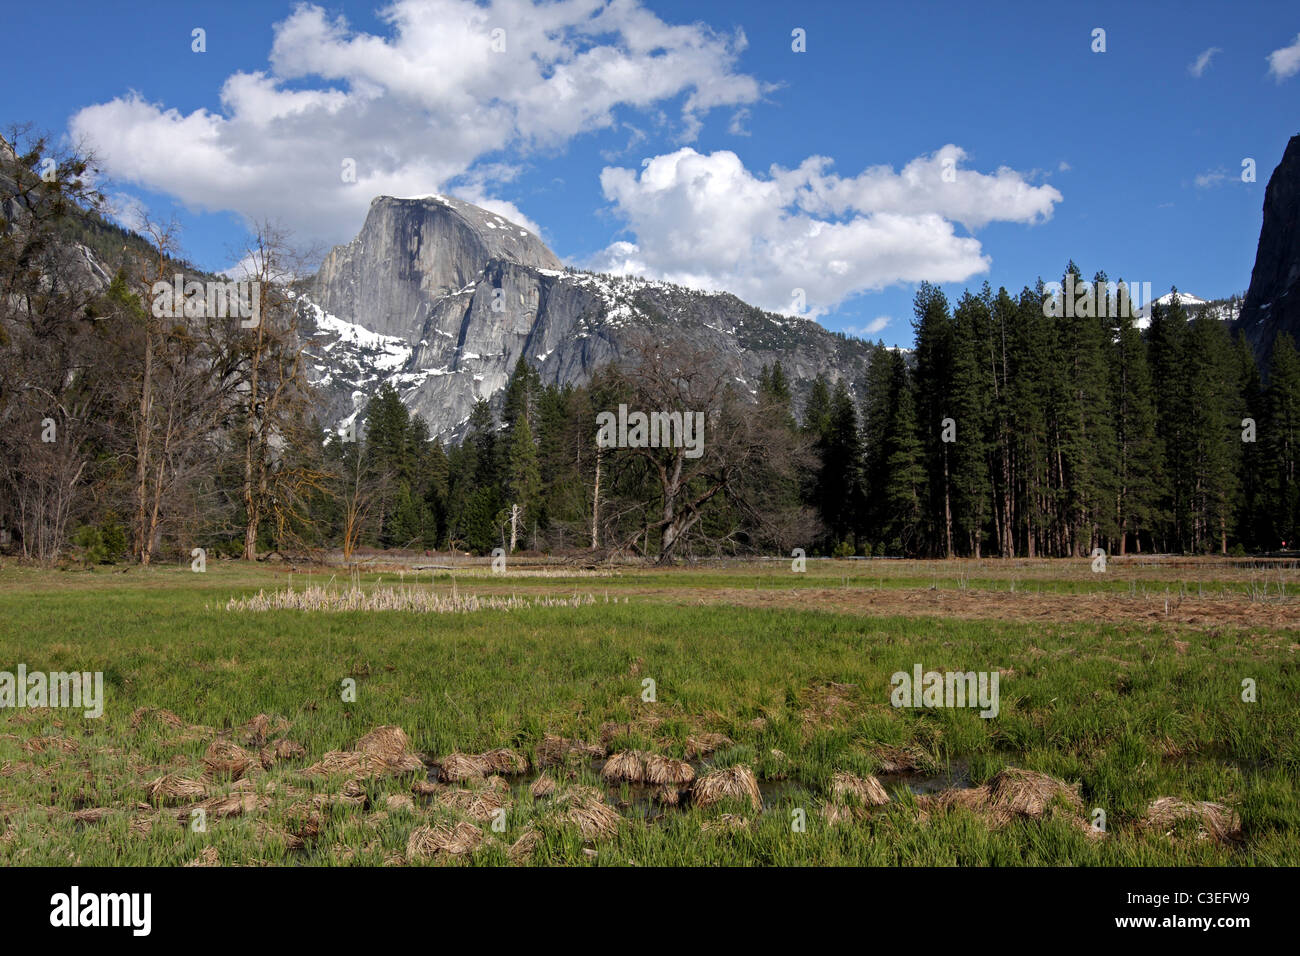 Half Dome in Yosemite National Park Stock Photo